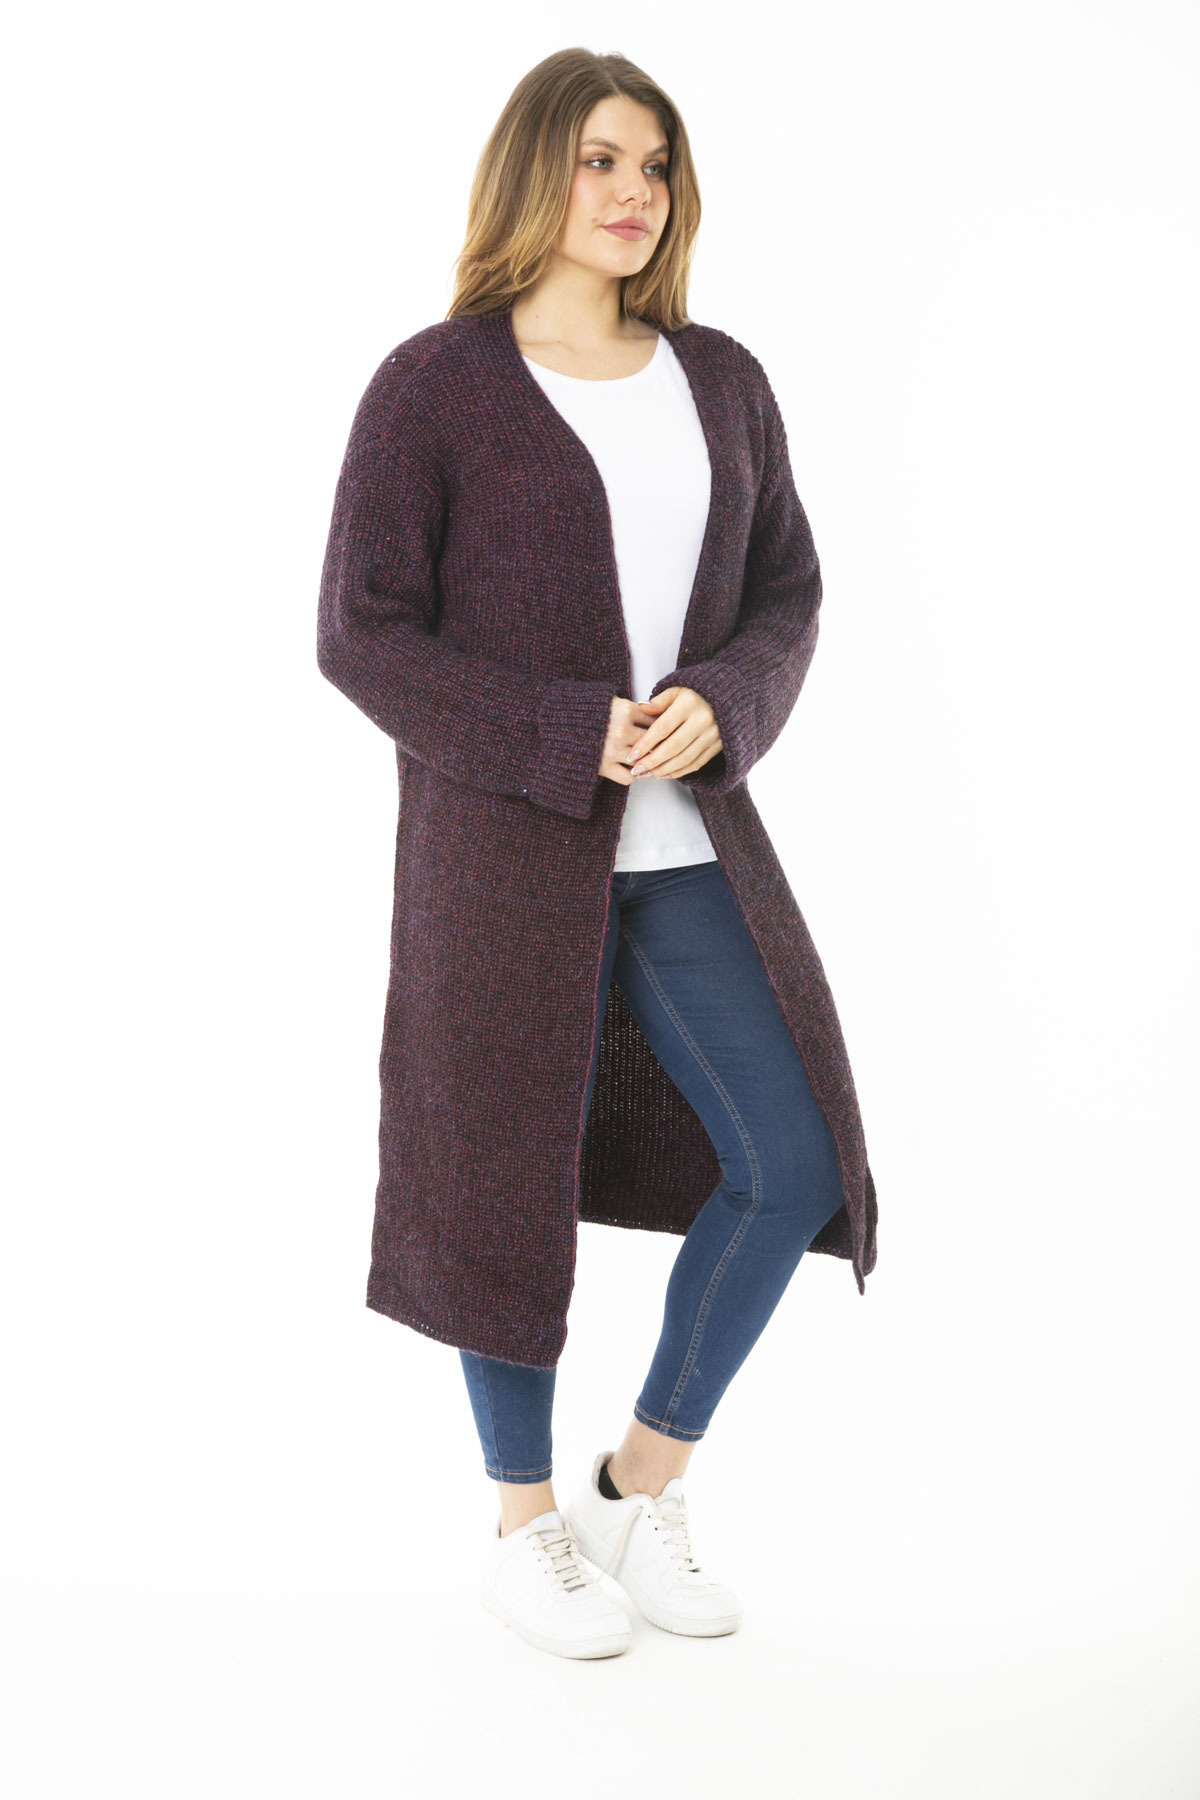 Levně Şans Women's Plus Size Purple Long Sweater Long Cardigan with a Slit